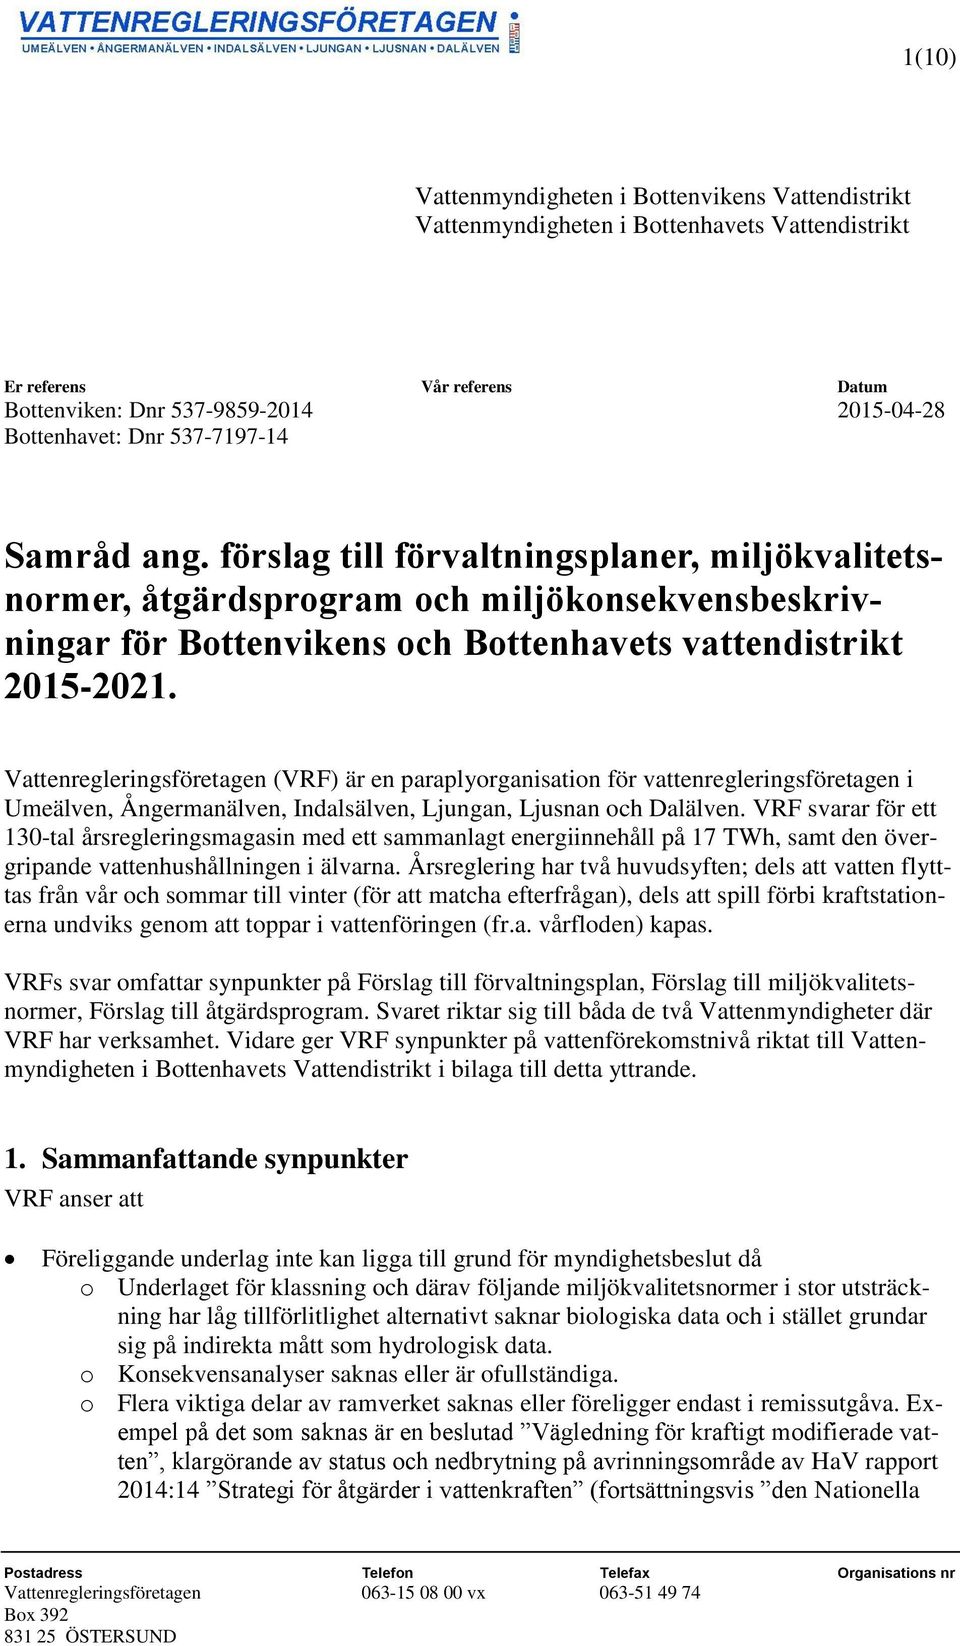 Vattenregleringsföretagen (VRF) är en paraplyorganisation för vattenregleringsföretagen i Umeälven, Ångermanälven, Indalsälven, Ljungan, Ljusnan och Dalälven.